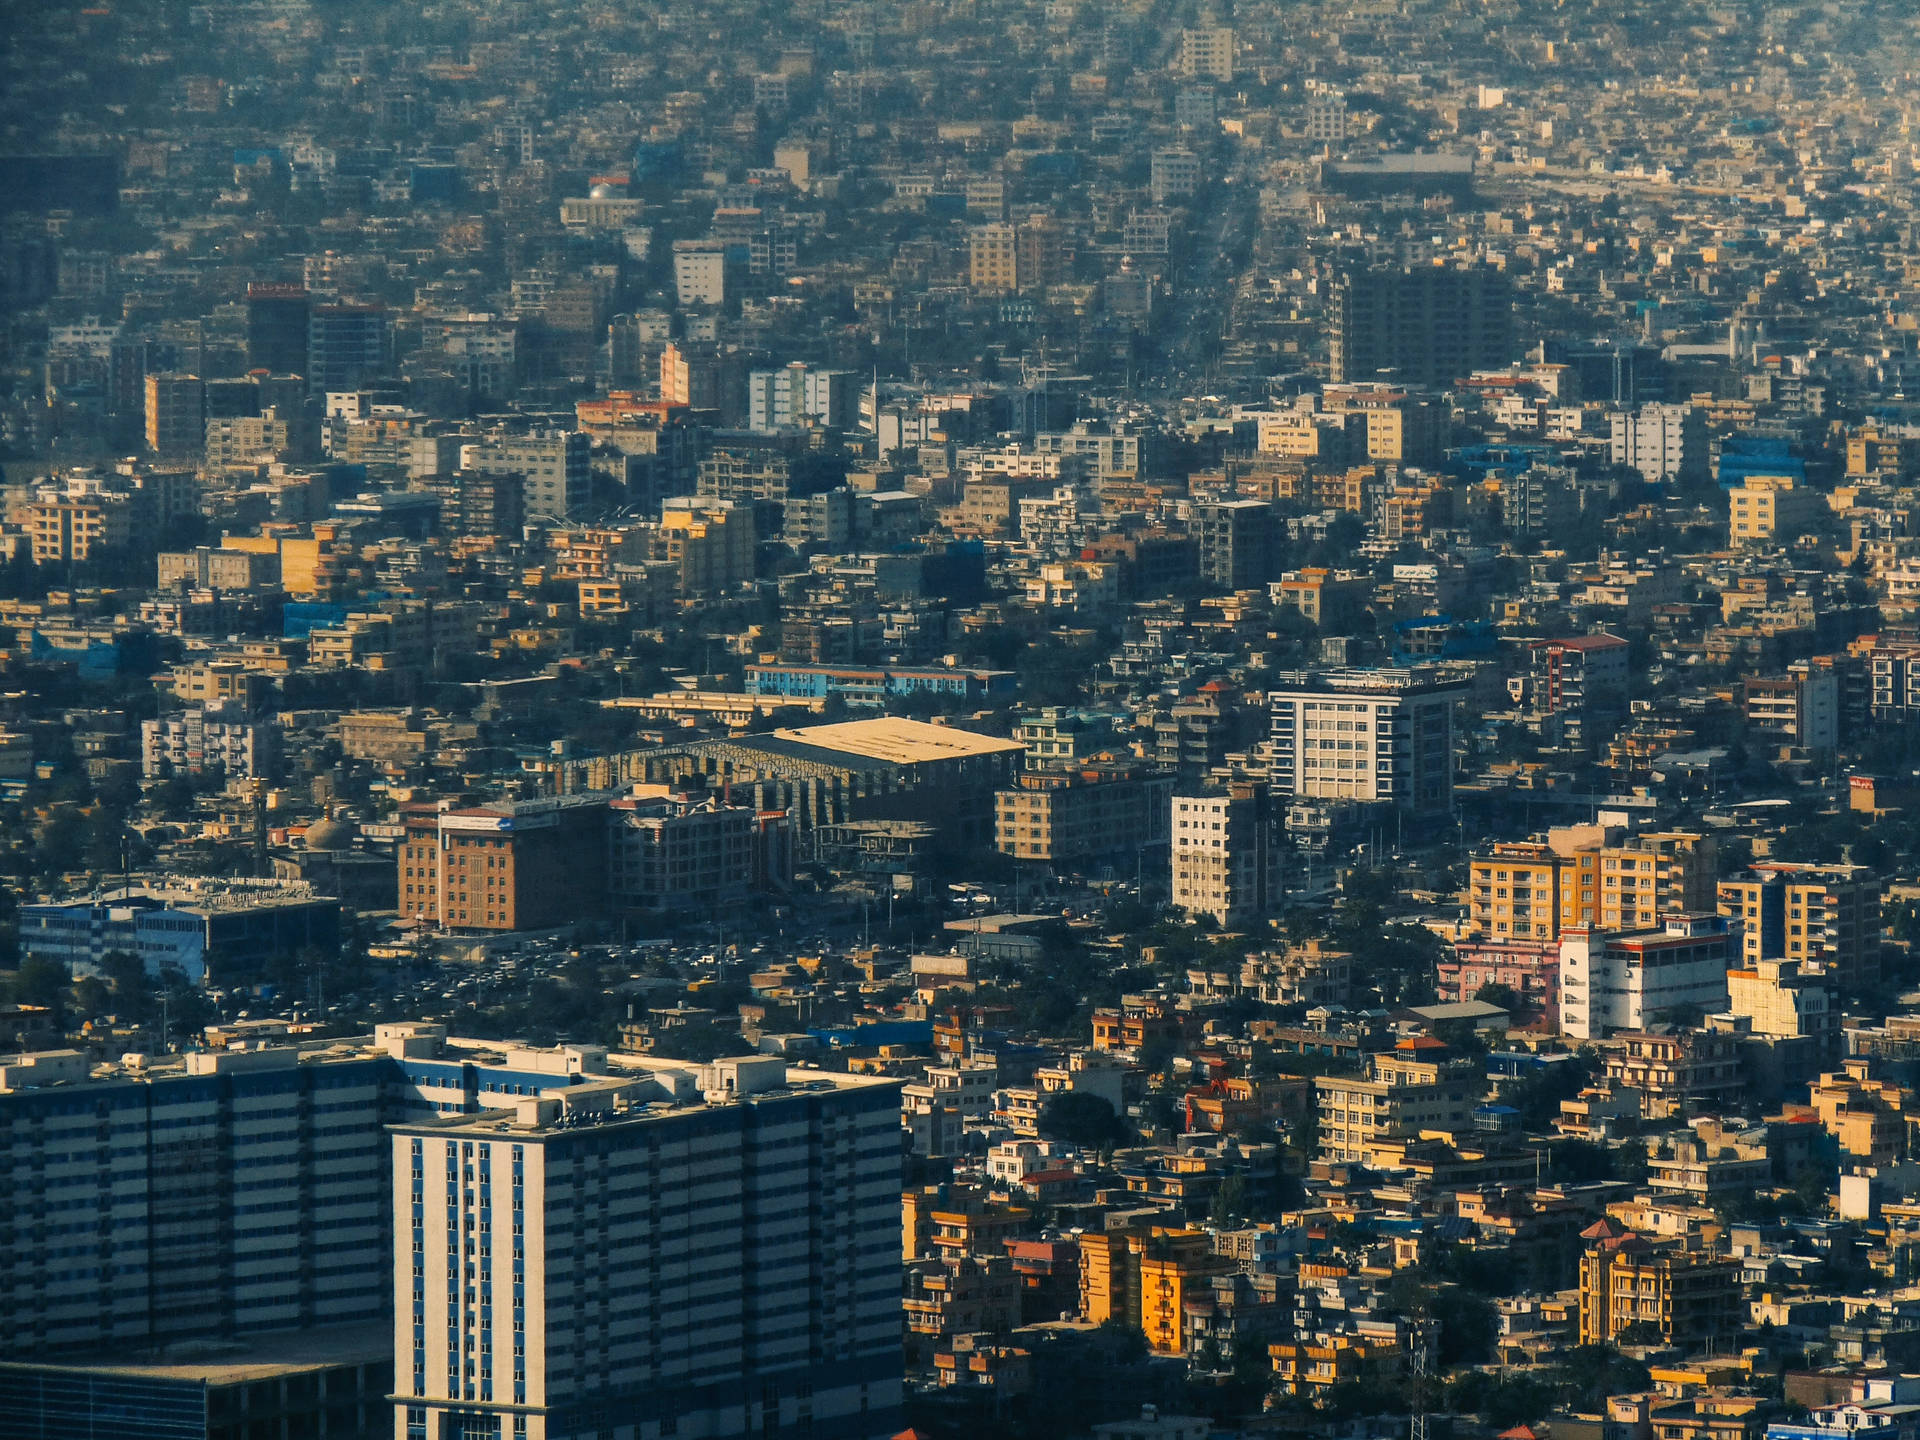 Afghanistan's Capital Kabul